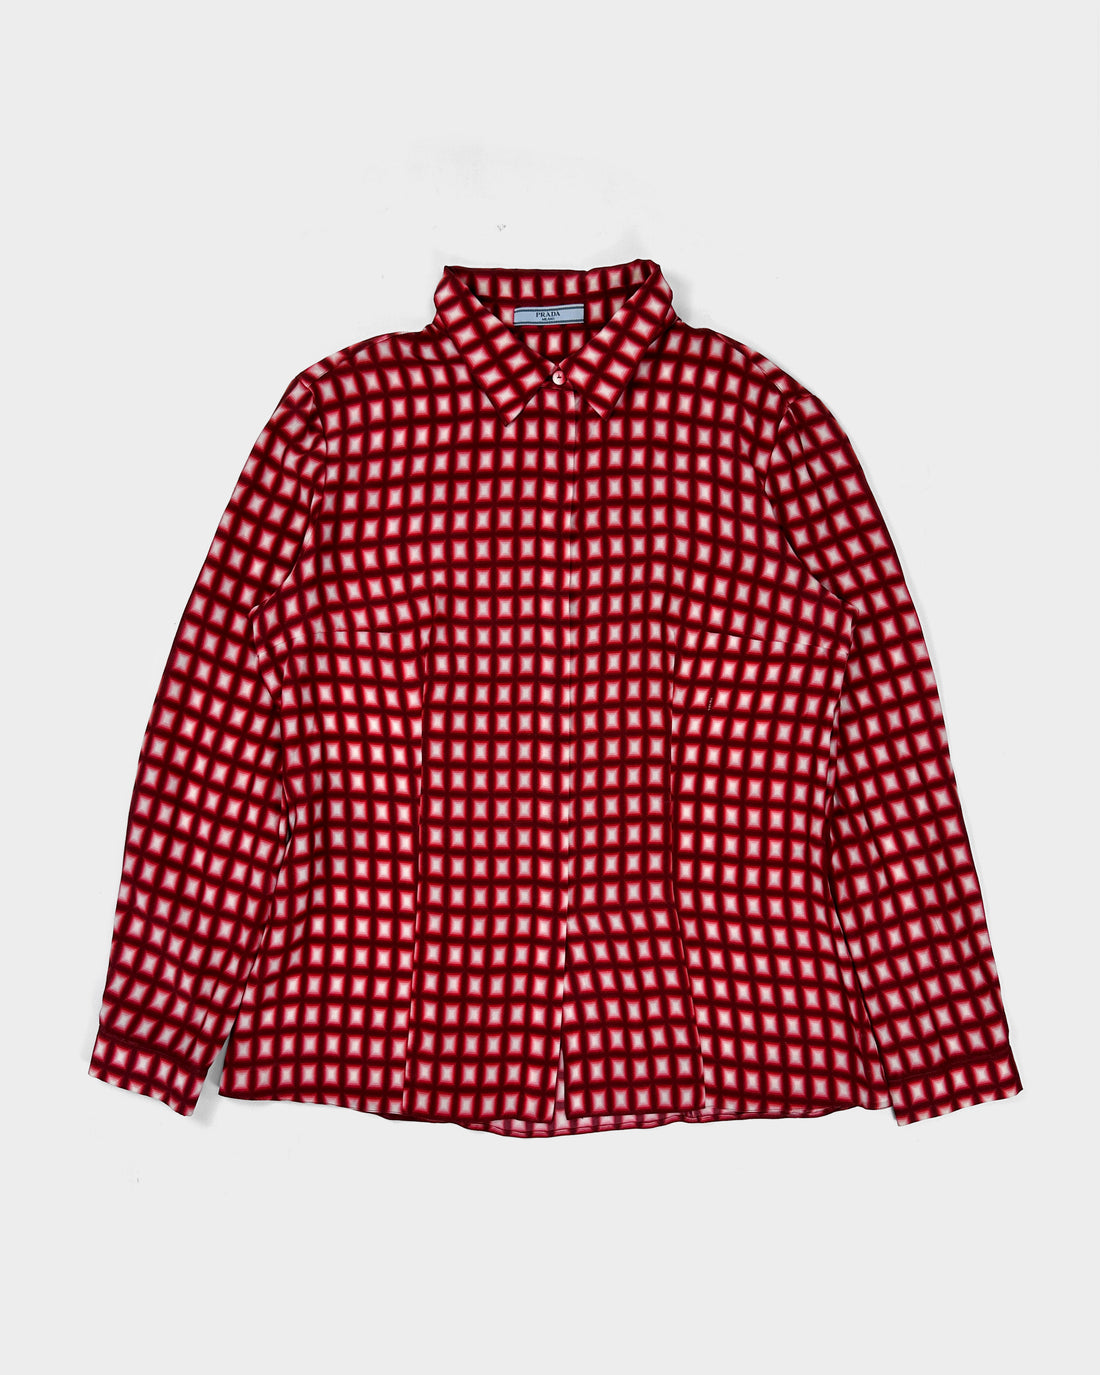 Prada Red Squares Pattern Silk Shirt 2000's